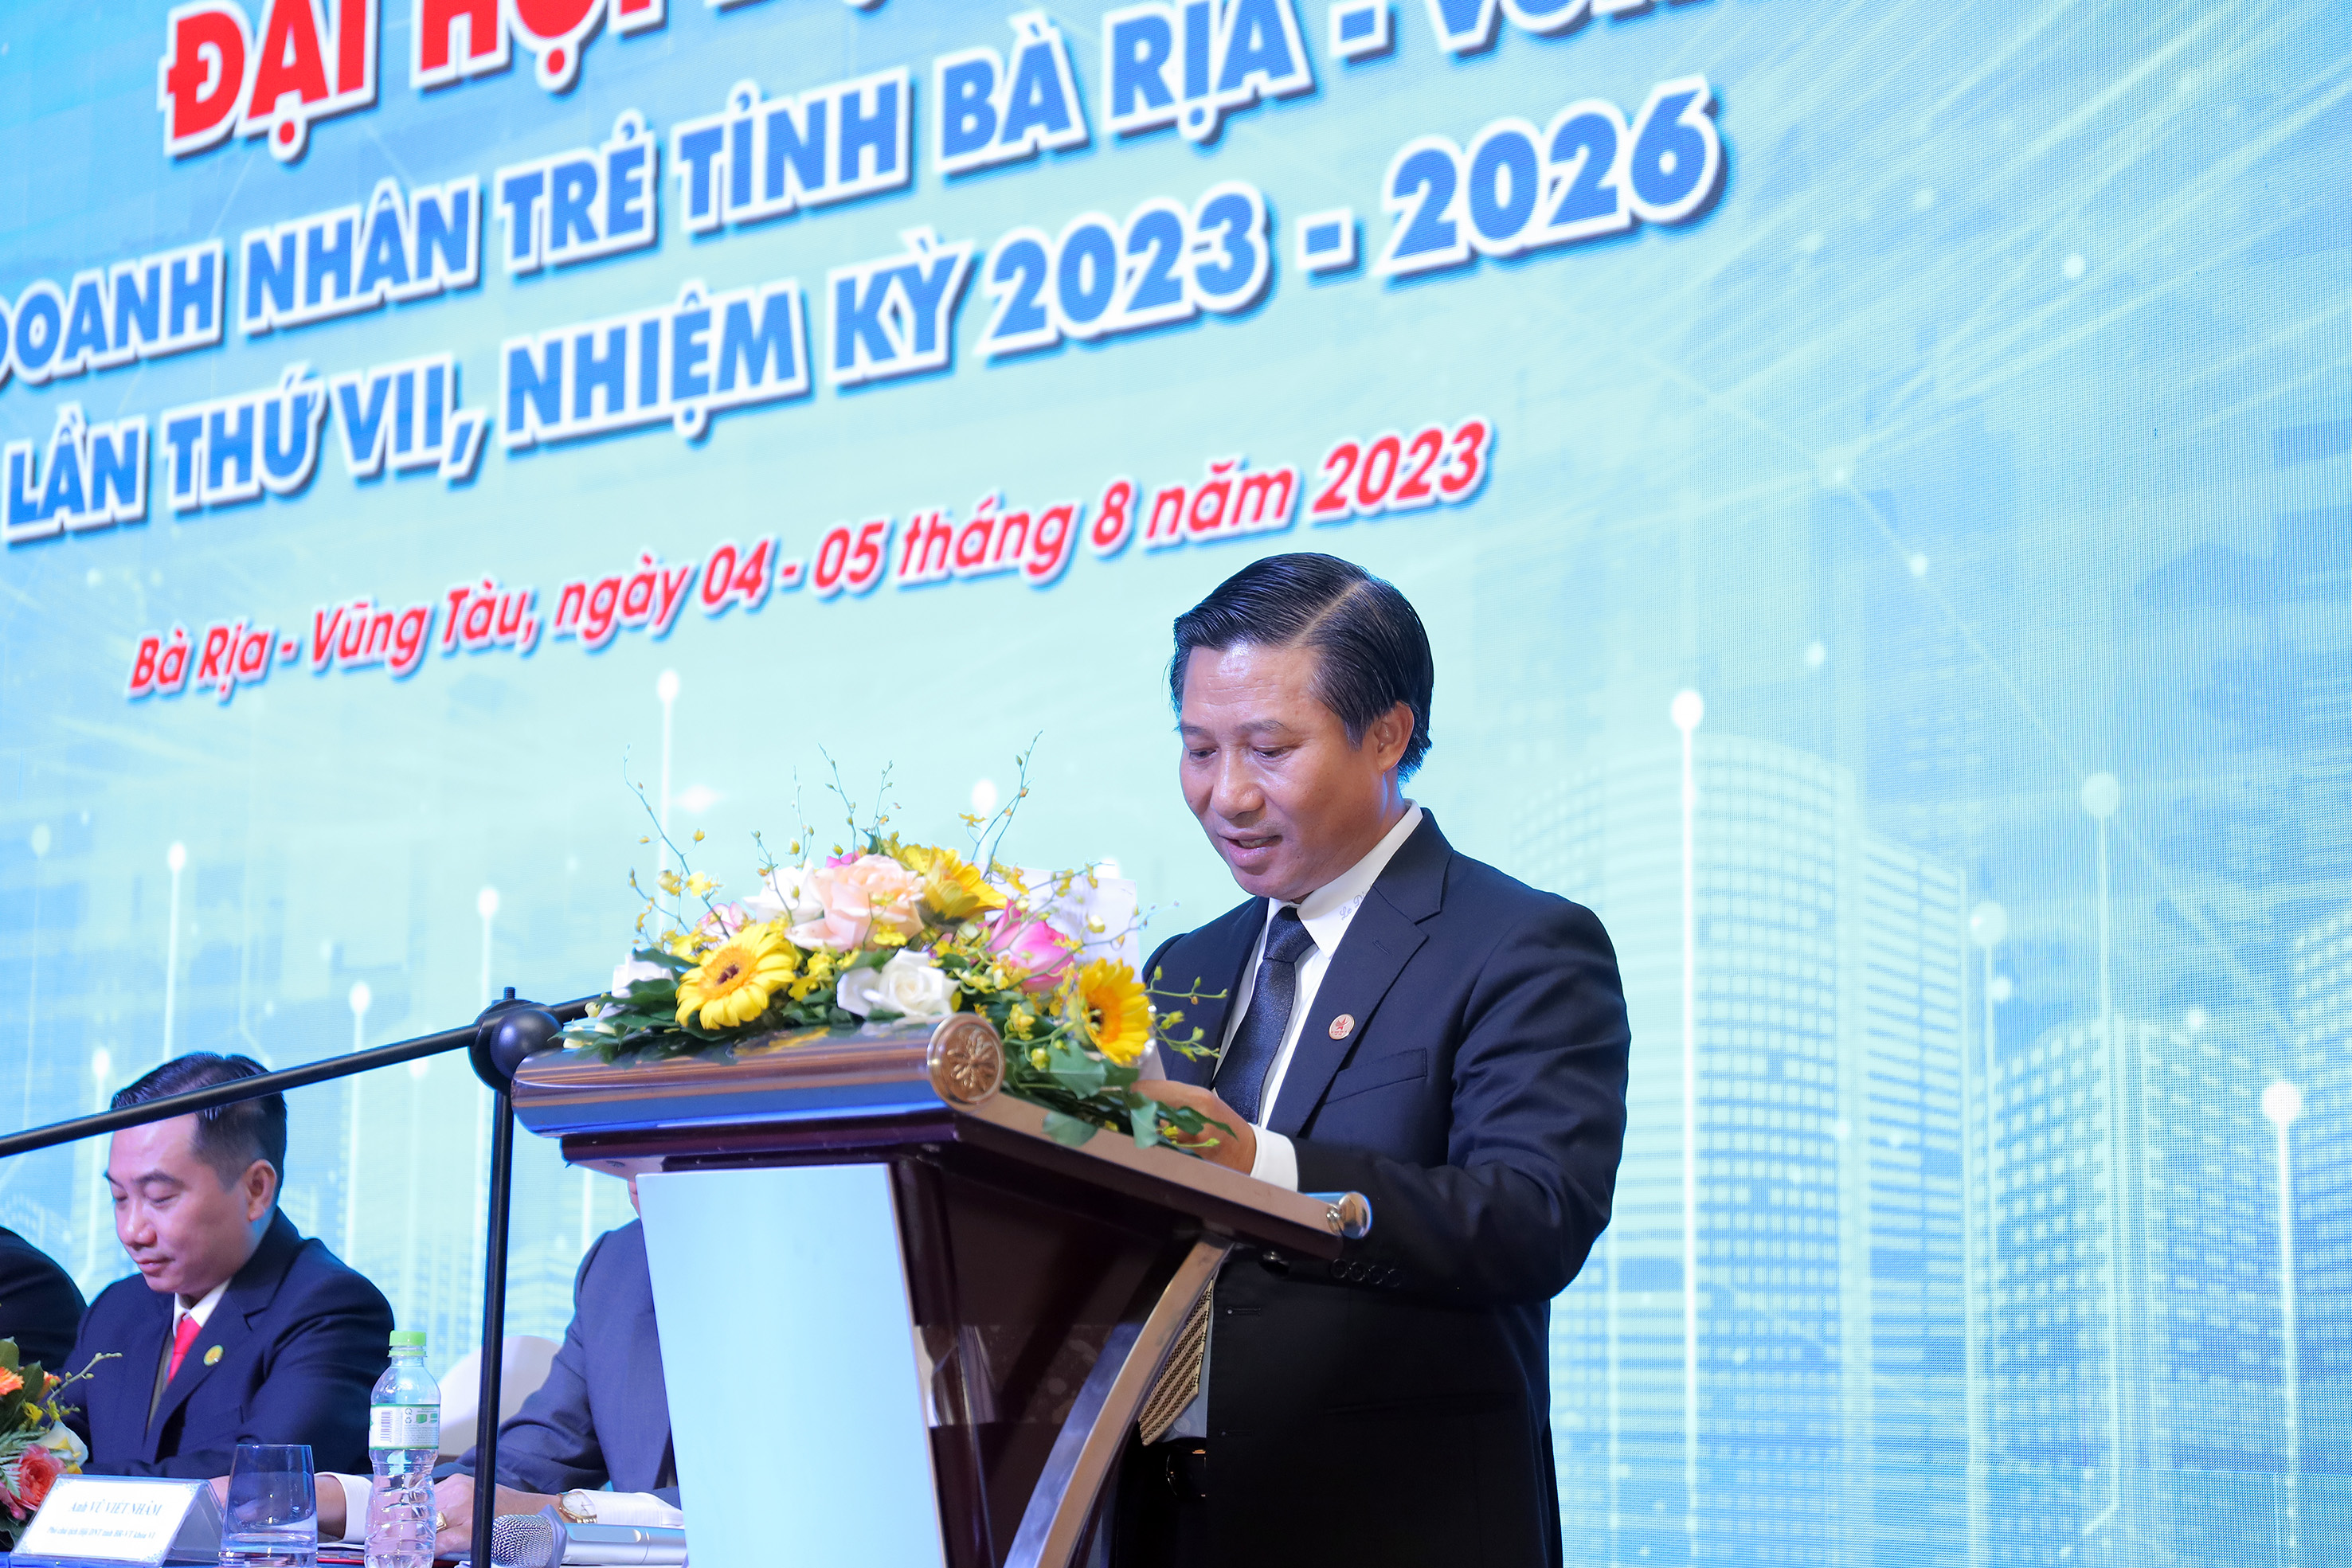 Ông Lê Đình Thắng, Chủ tịch Hội doanh nhân trẻ tỉnh Bà Rịa - Vũng Tàu, Chủ tịch HĐQT Công ty cổ phần Xây Dựng DIC Holdings phát biểu tại phiên trù bị Đại hội.